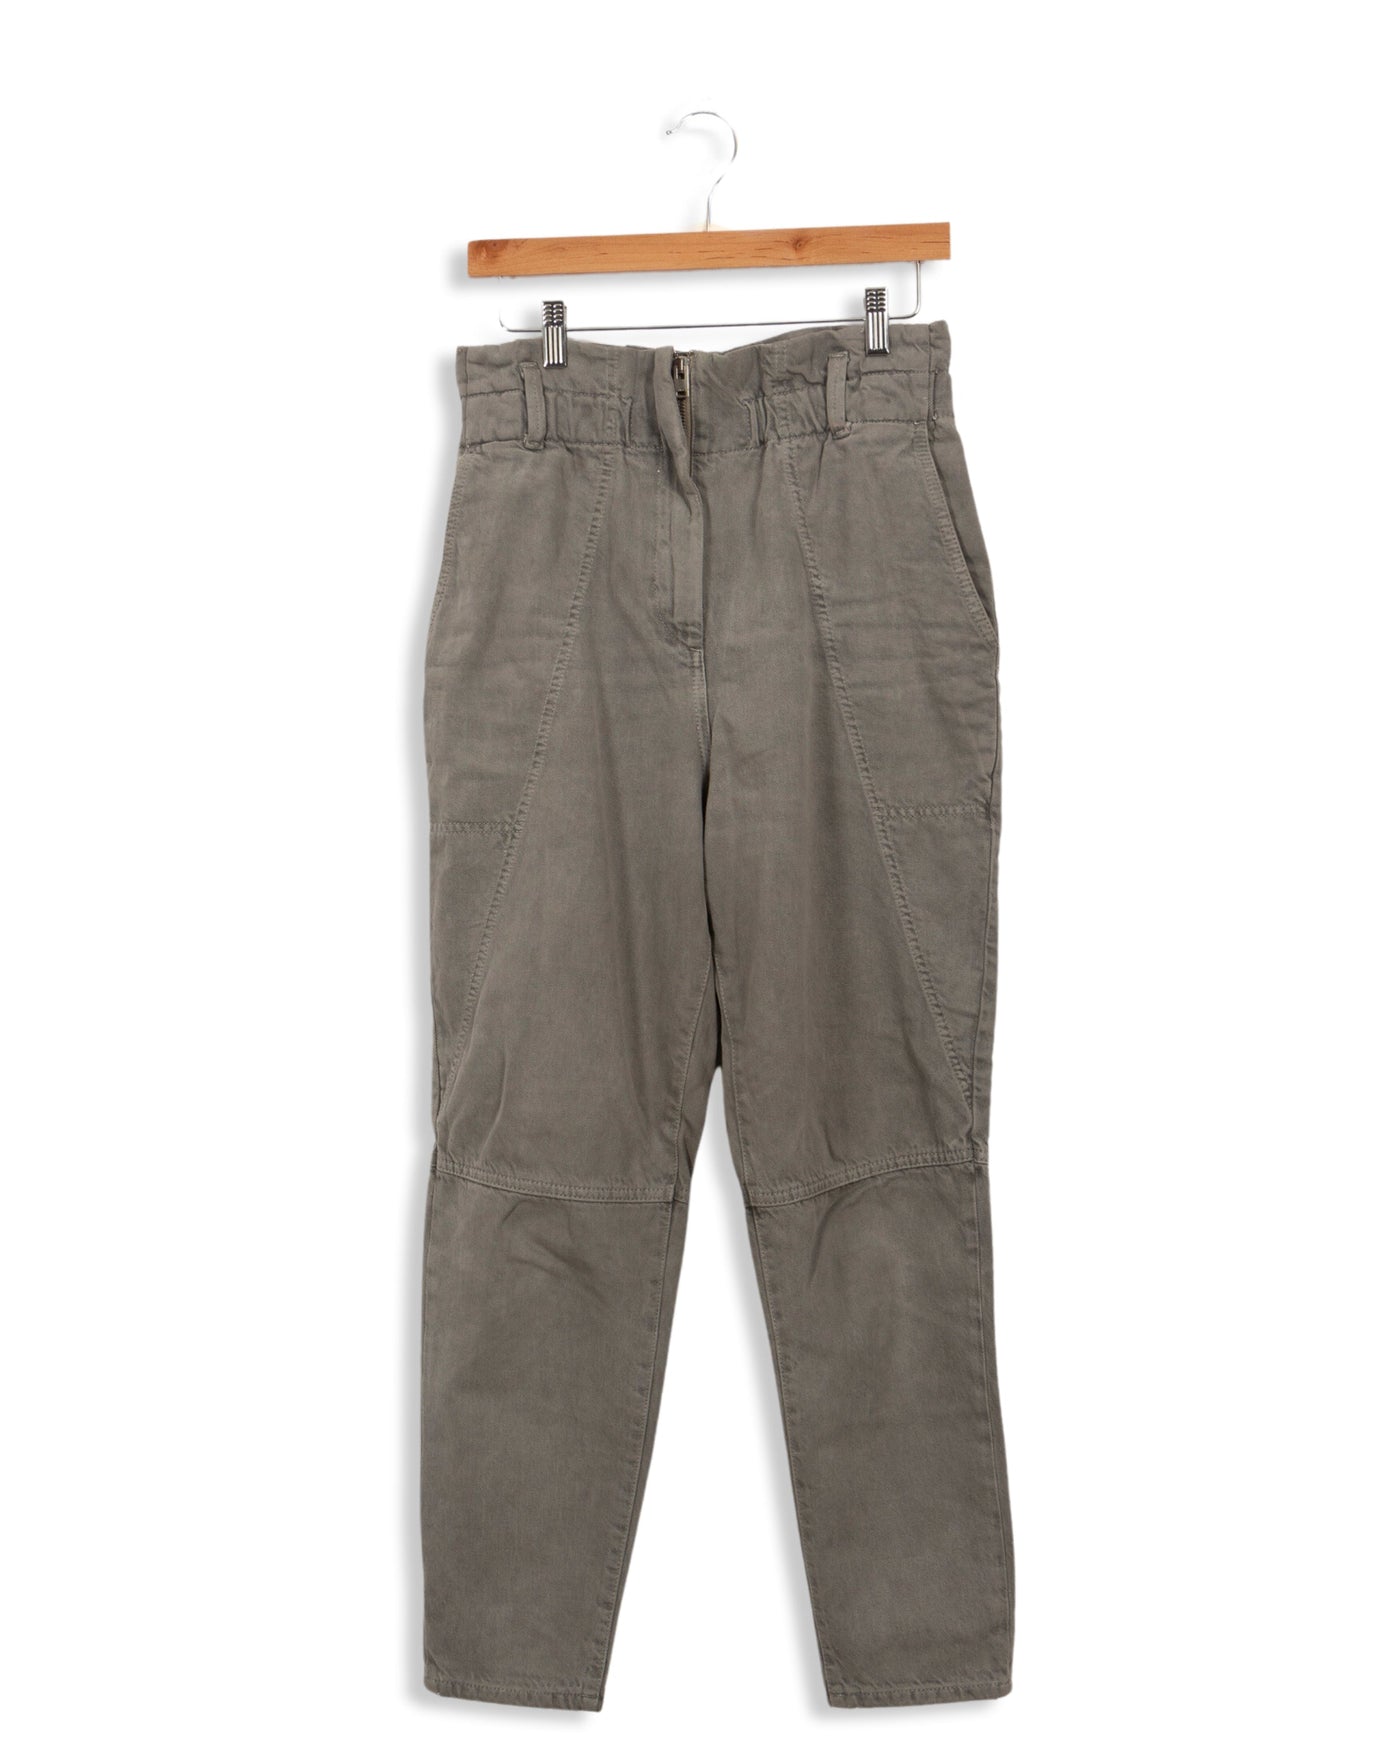 Pantalon gris IRO - 36